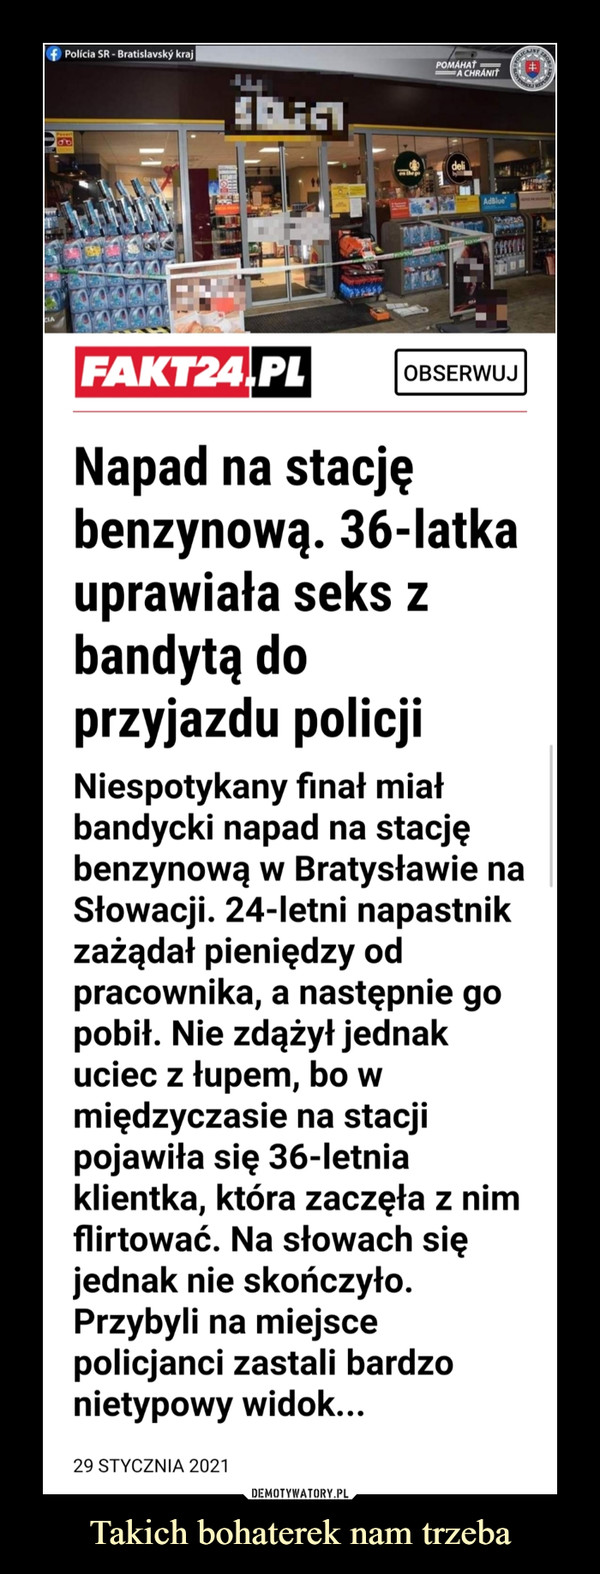 Takich bohaterek nam trzeba –  f Polícia SR - Bratislavský krajO RORPOMÁHAŤA CHRÁNITdeliAdBlueFAKT24,PLOBSERWUJNapad na stacjębenzynową. 36-latkauprawiała seks zbandytą doprzyjazdu policjiNiespotykany finał miałbandycki napad na stacjębenzynową w Bratysławie naSłowacji. 24-letni napastnikzażądał pieniędzy odpracownika, a następnie gopobił. Nie zdążył jednakuciec z łupem, bo wmiędzyczasie na stacjipojawiła się 36-letniaklientka, która zaczęła z nimflirtować. Na słowach sięjednak nie skończyło.Przybyli na miejscepolicjanci zastali bardzonietypowy widok...29 STYCZNIA 2021